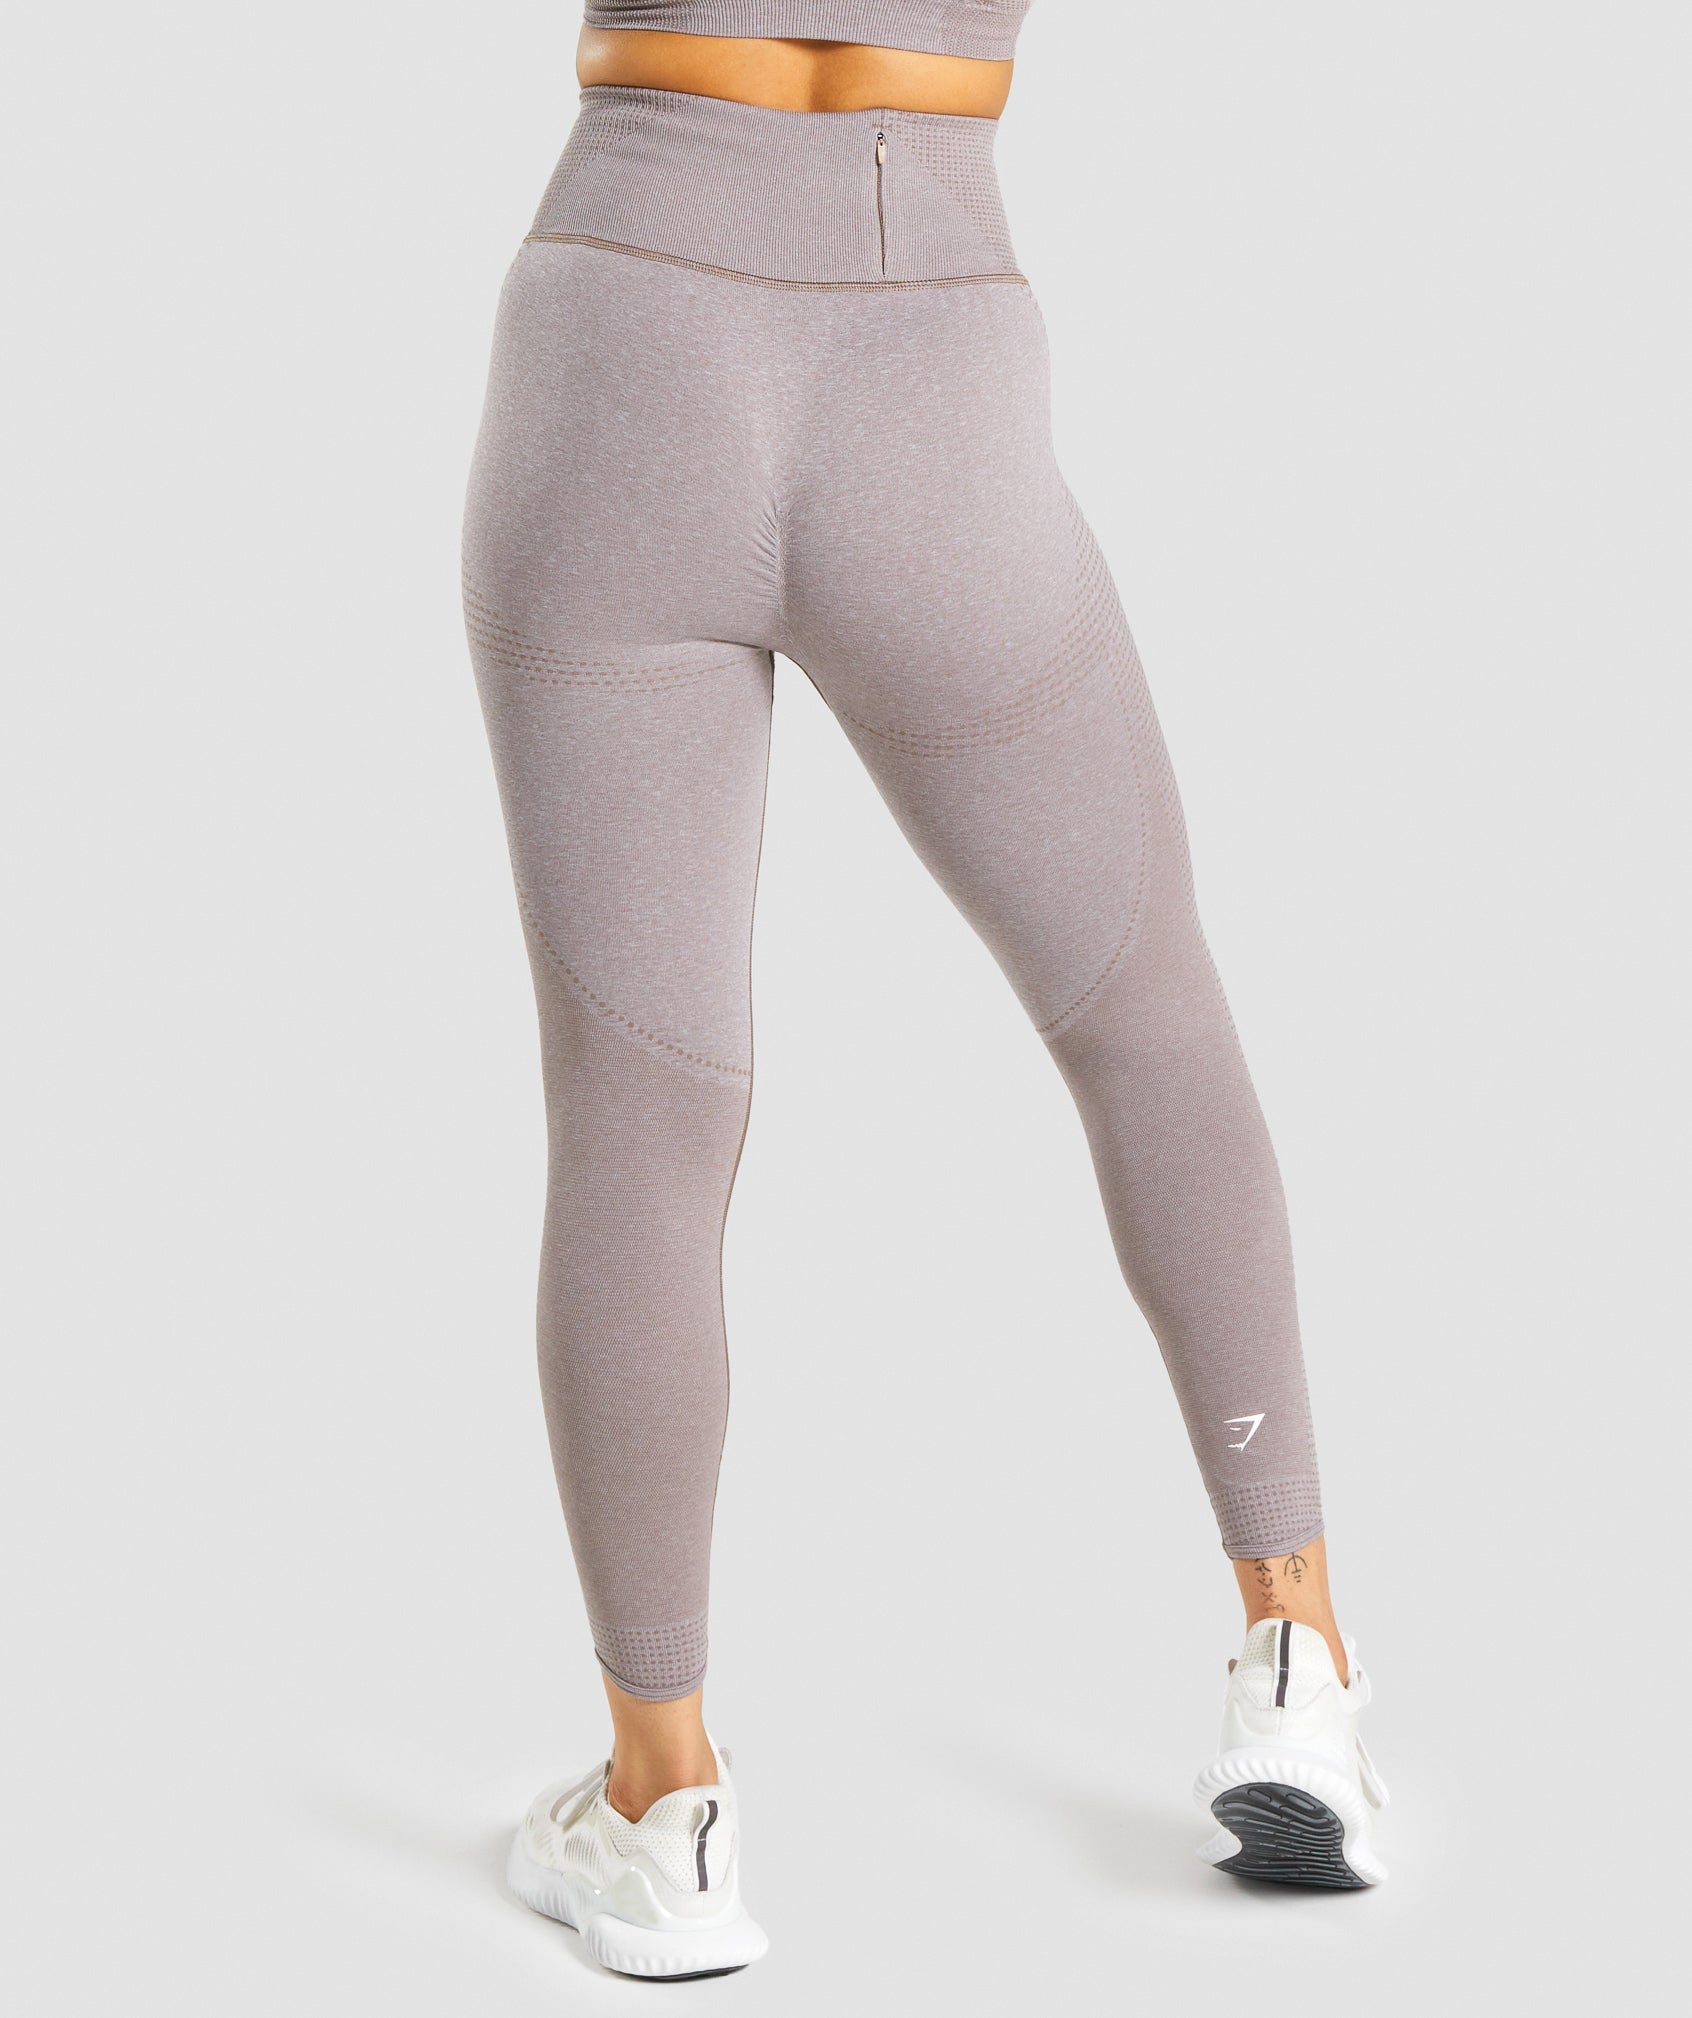 GYMSHARK Gymshark VITAL RISE - Leggings - Women's - light grey